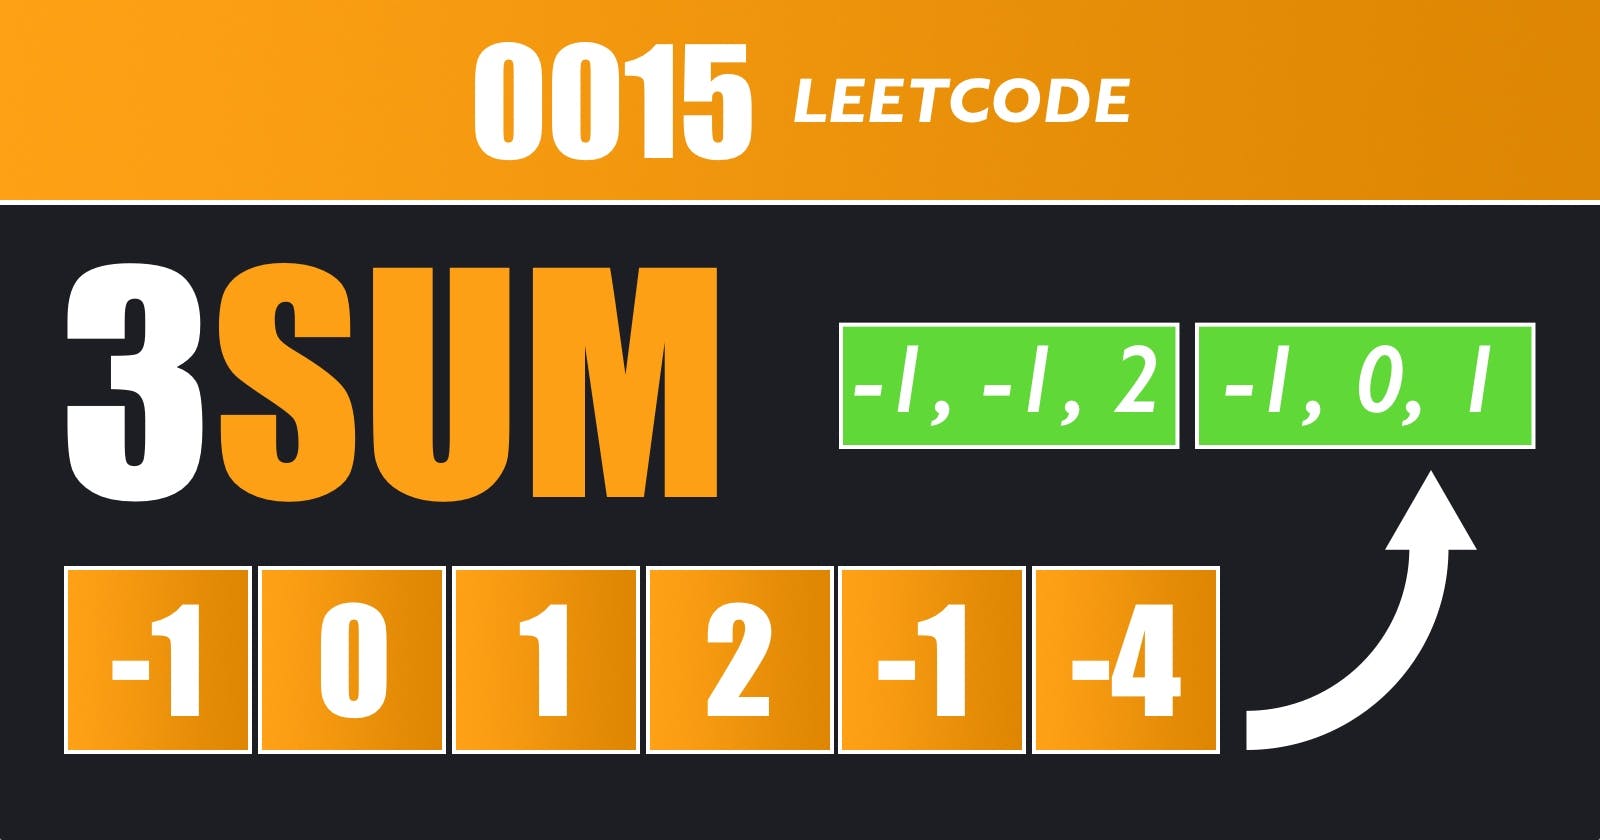 3Sum - Leetcode 15